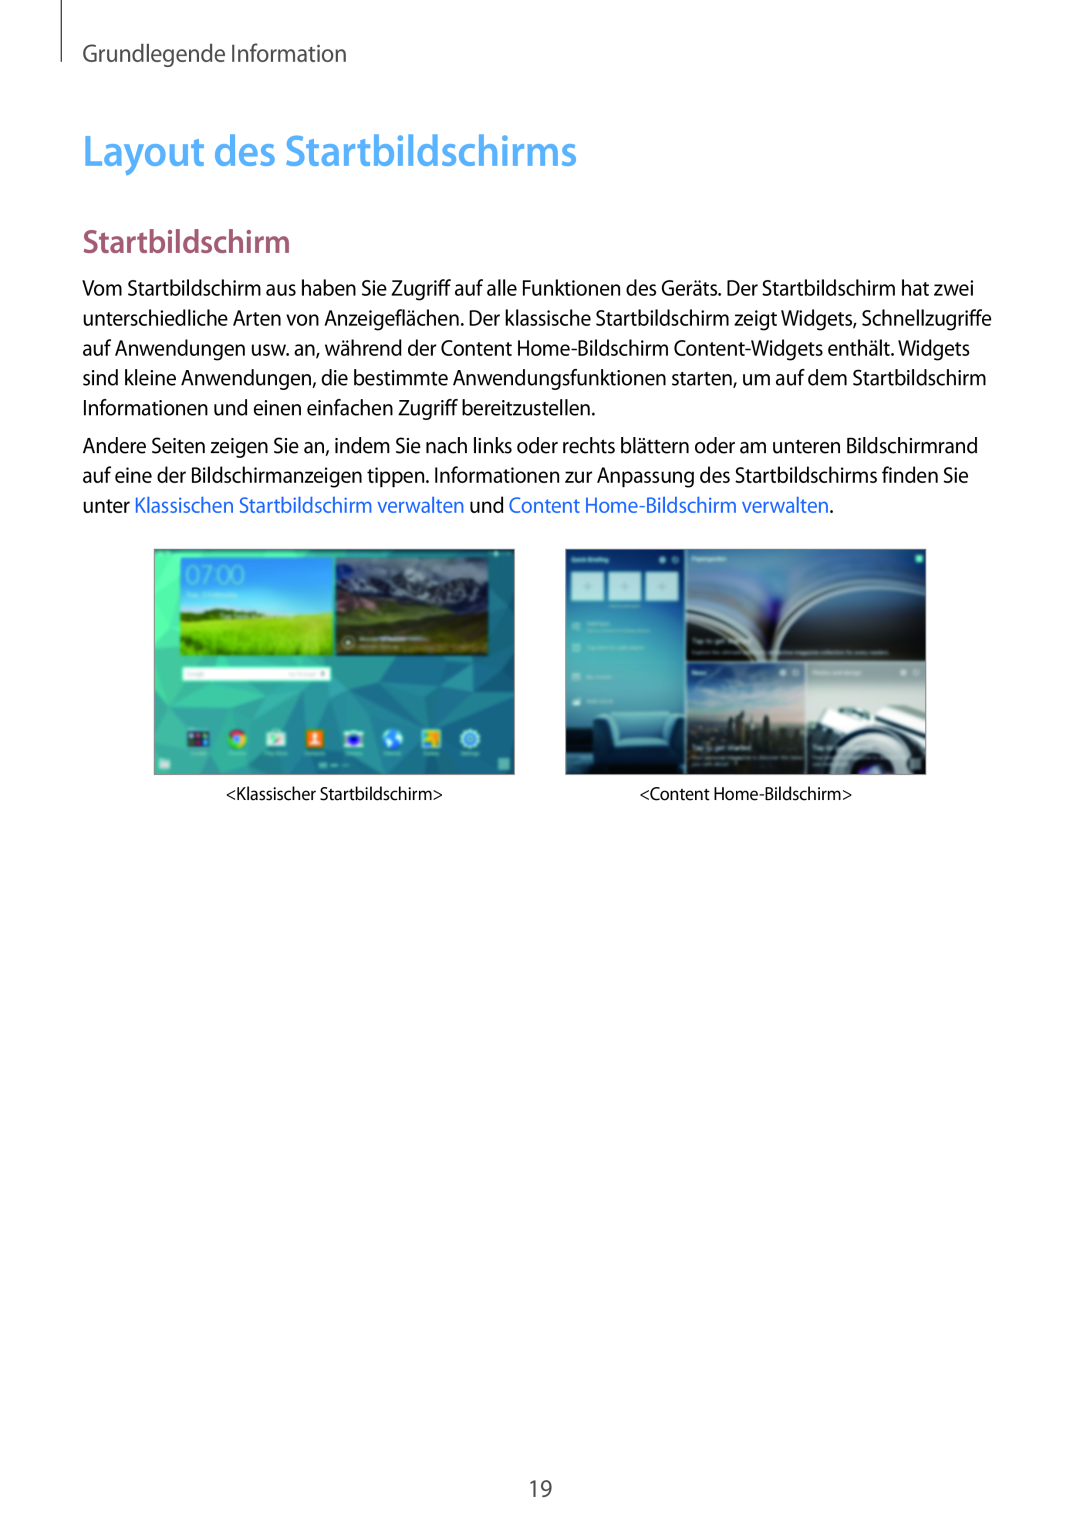 Samsung SM-T800NZWAEUR, SM-T800NTSAATO, SM-T800NHAAATO, SM-T800NTSASEB Layout des Startbildschirms, Grundlegende Information 